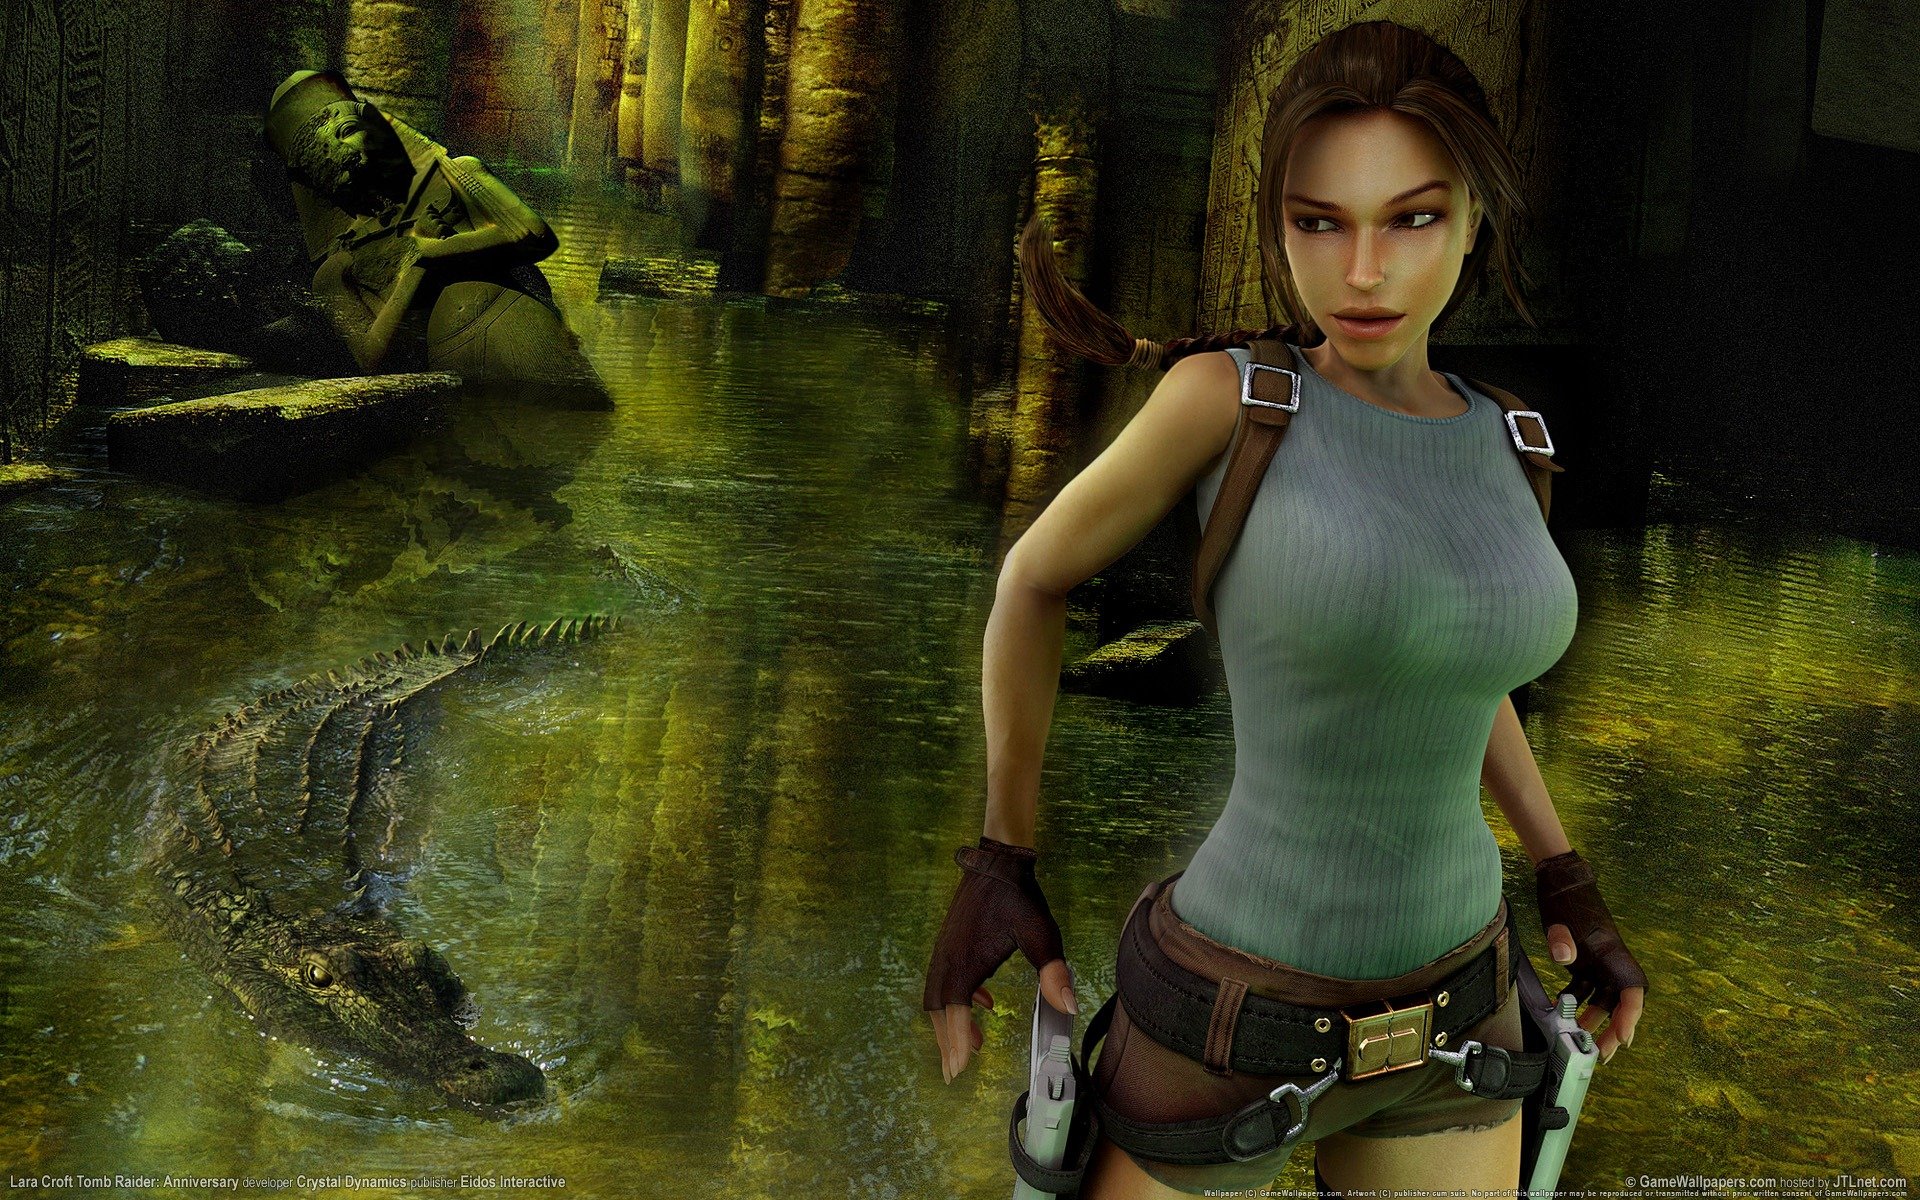 Best Tomb Raider (Lara Croft) wallpaper ID:437124 for High Resolution hd 1920x1200 PC